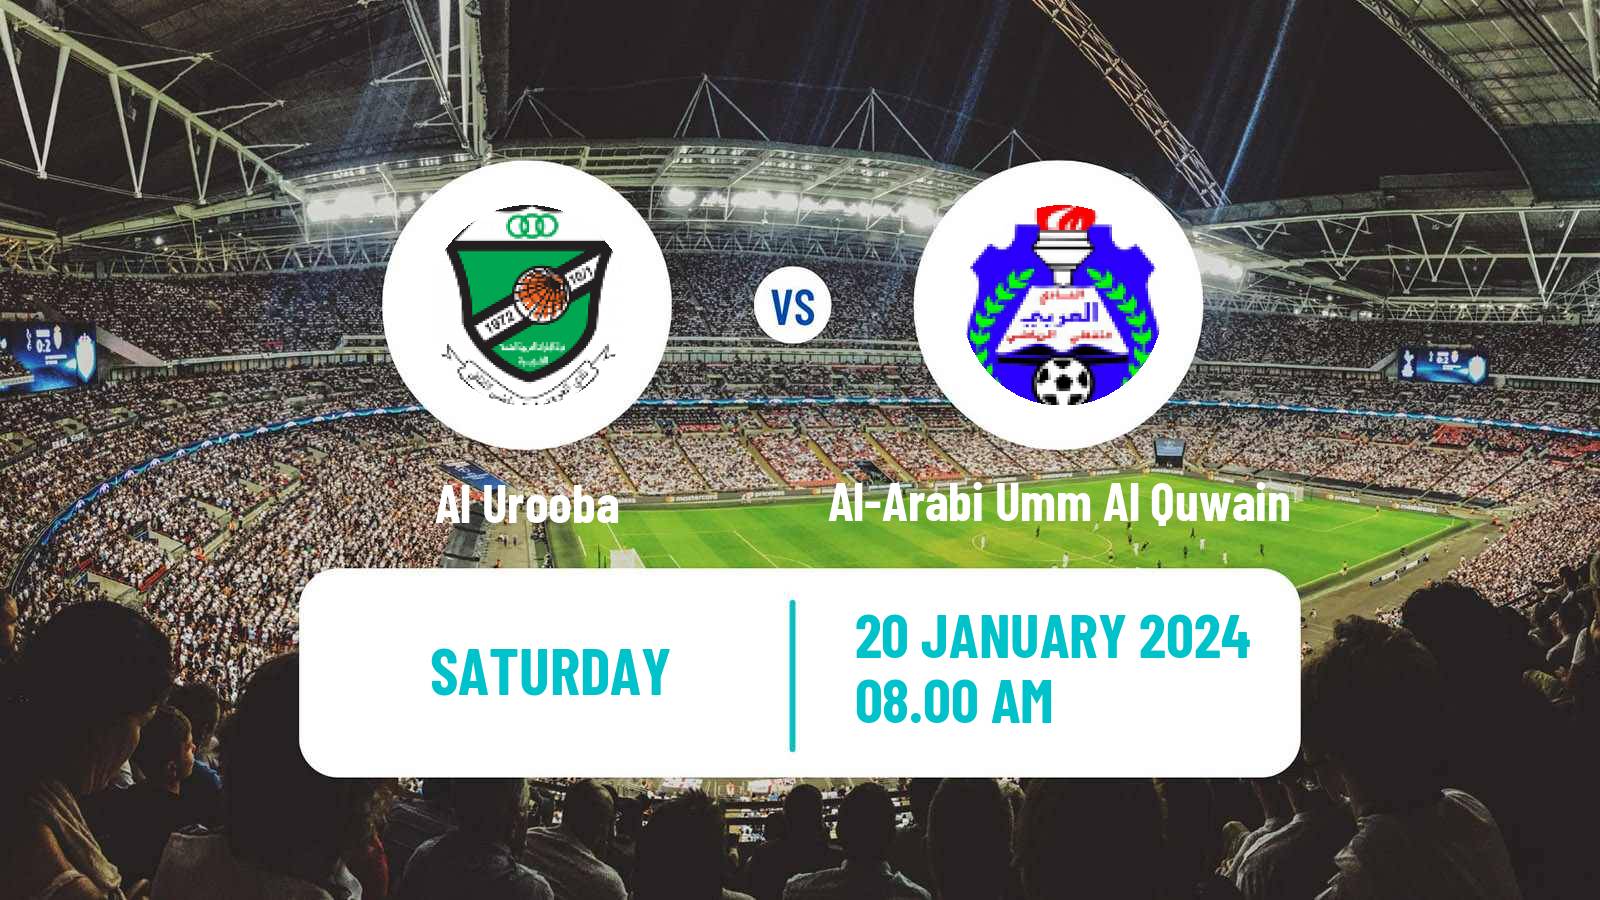 Soccer UAE Division 1 Al Urooba - Al-Arabi Umm Al Quwain